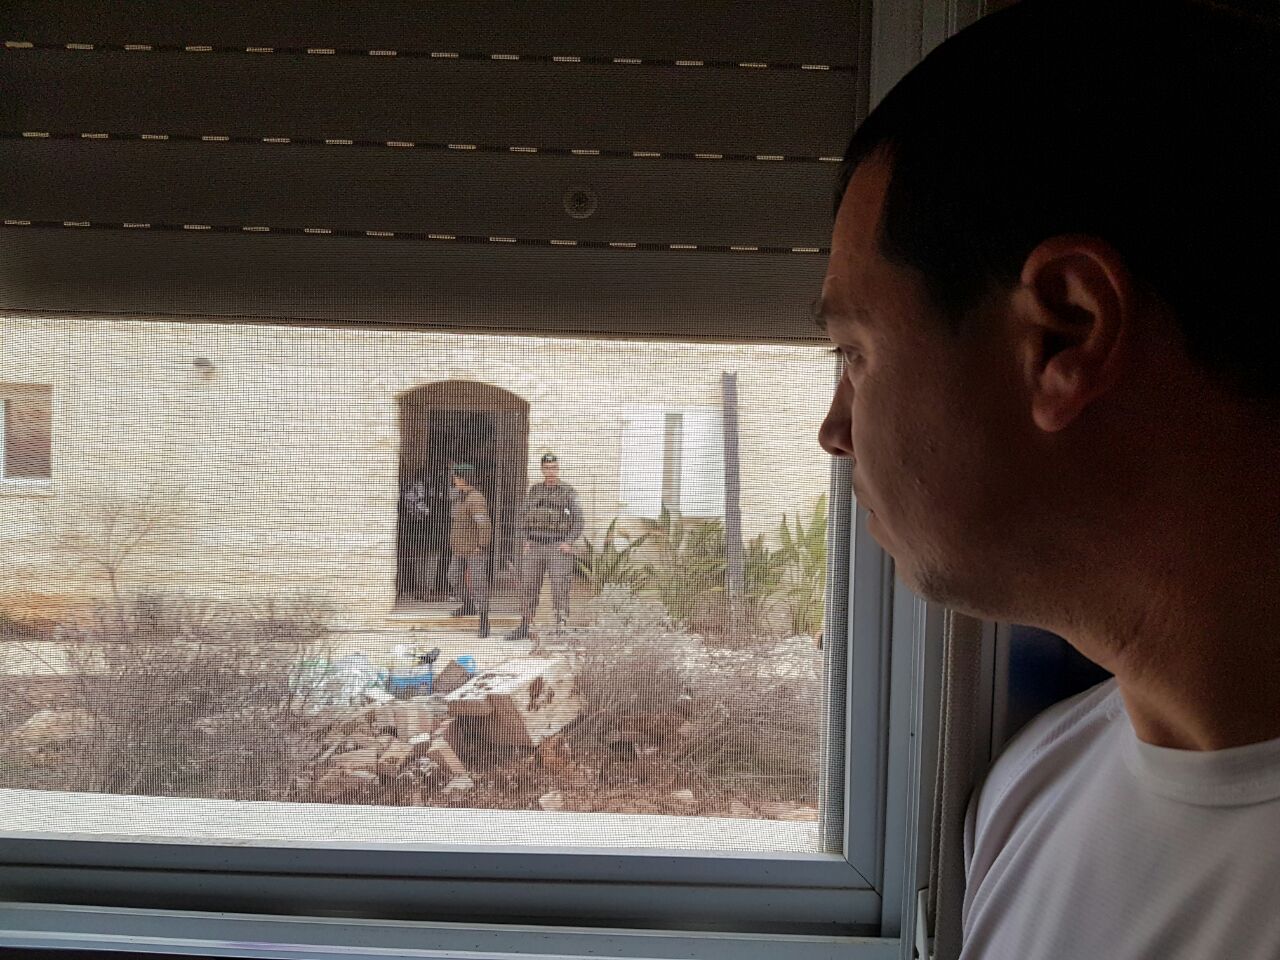 נתי פאר, שנפצע בצוק איתן וביתו מיועד היום להריסה, מביט בכוחות הגירוש מבעד לחלון ביתו (אהוד אמיתון, tps)